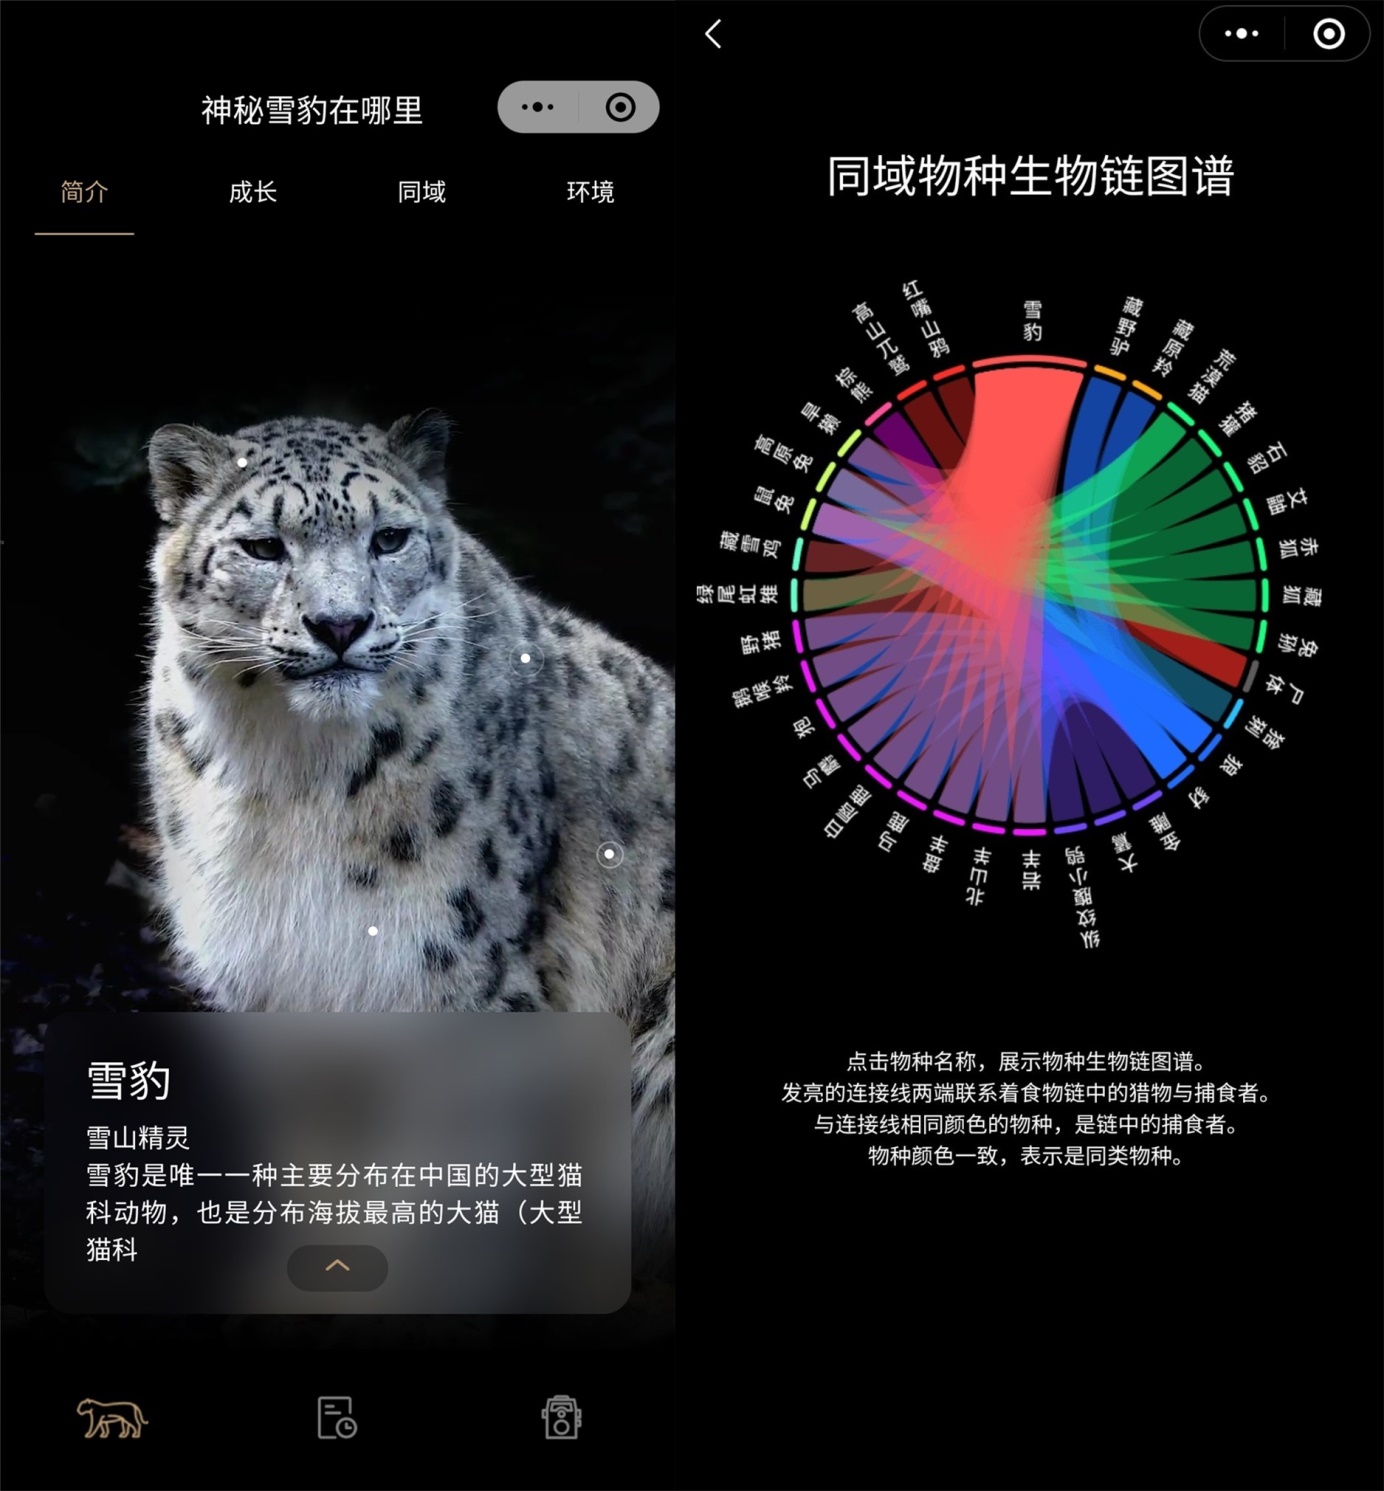 世界雪豹日 腾讯推"神秘雪豹在哪里"小程序用AI助力雪豹保护